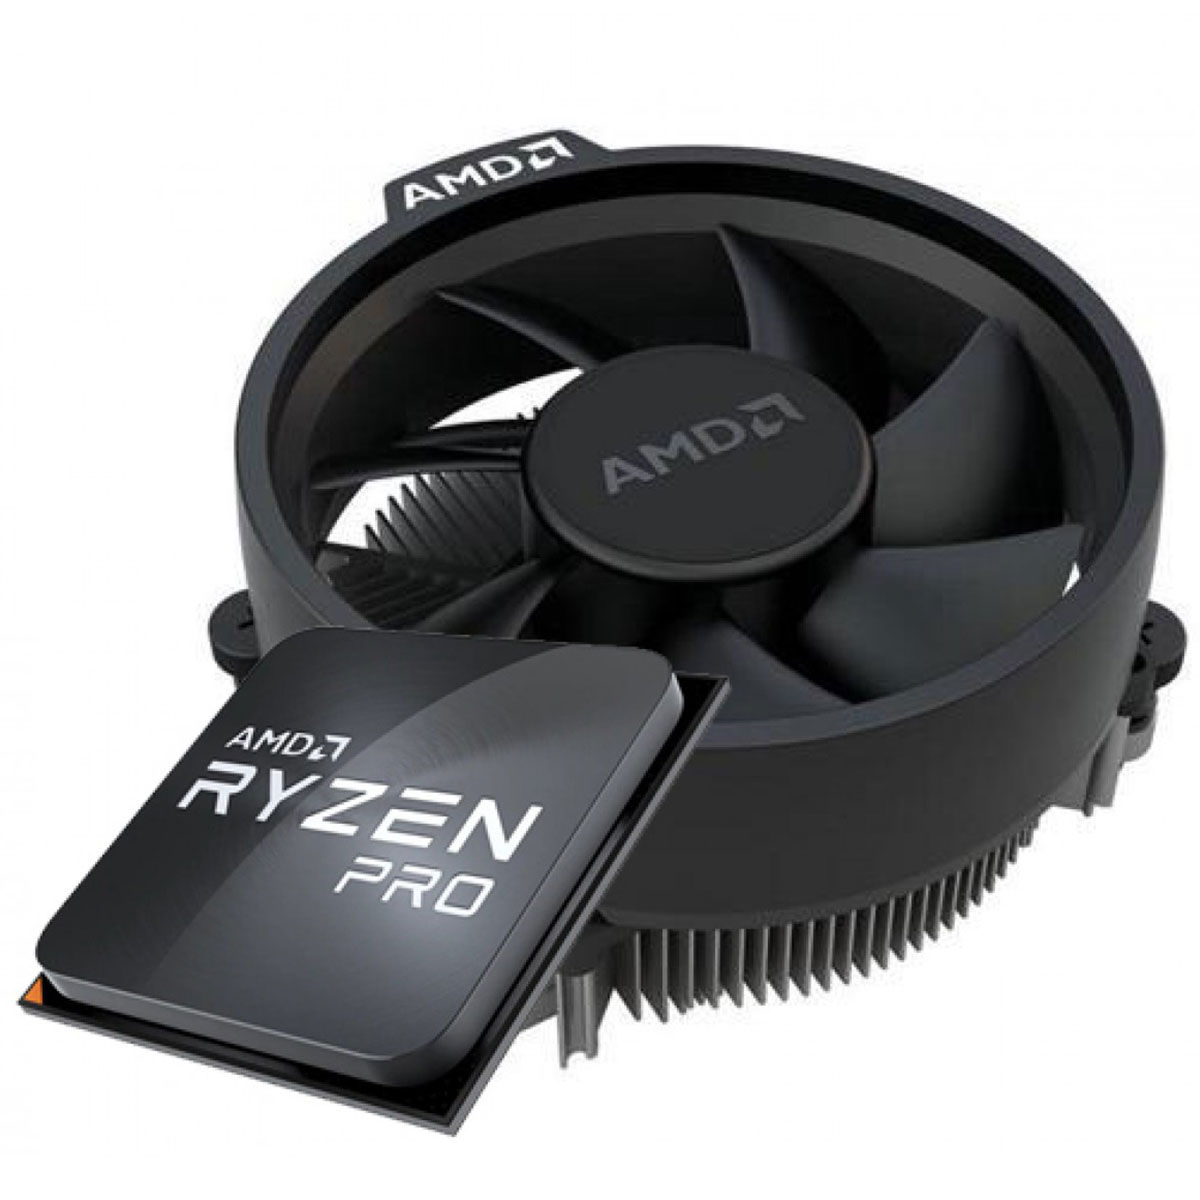 AMD Ryzen 5 4650G Pro Hexa Core - 12 Threads - 3.7GHz (4.2GHz Turbo) - Cache 8MB - AM4 - 100-100000143MPK